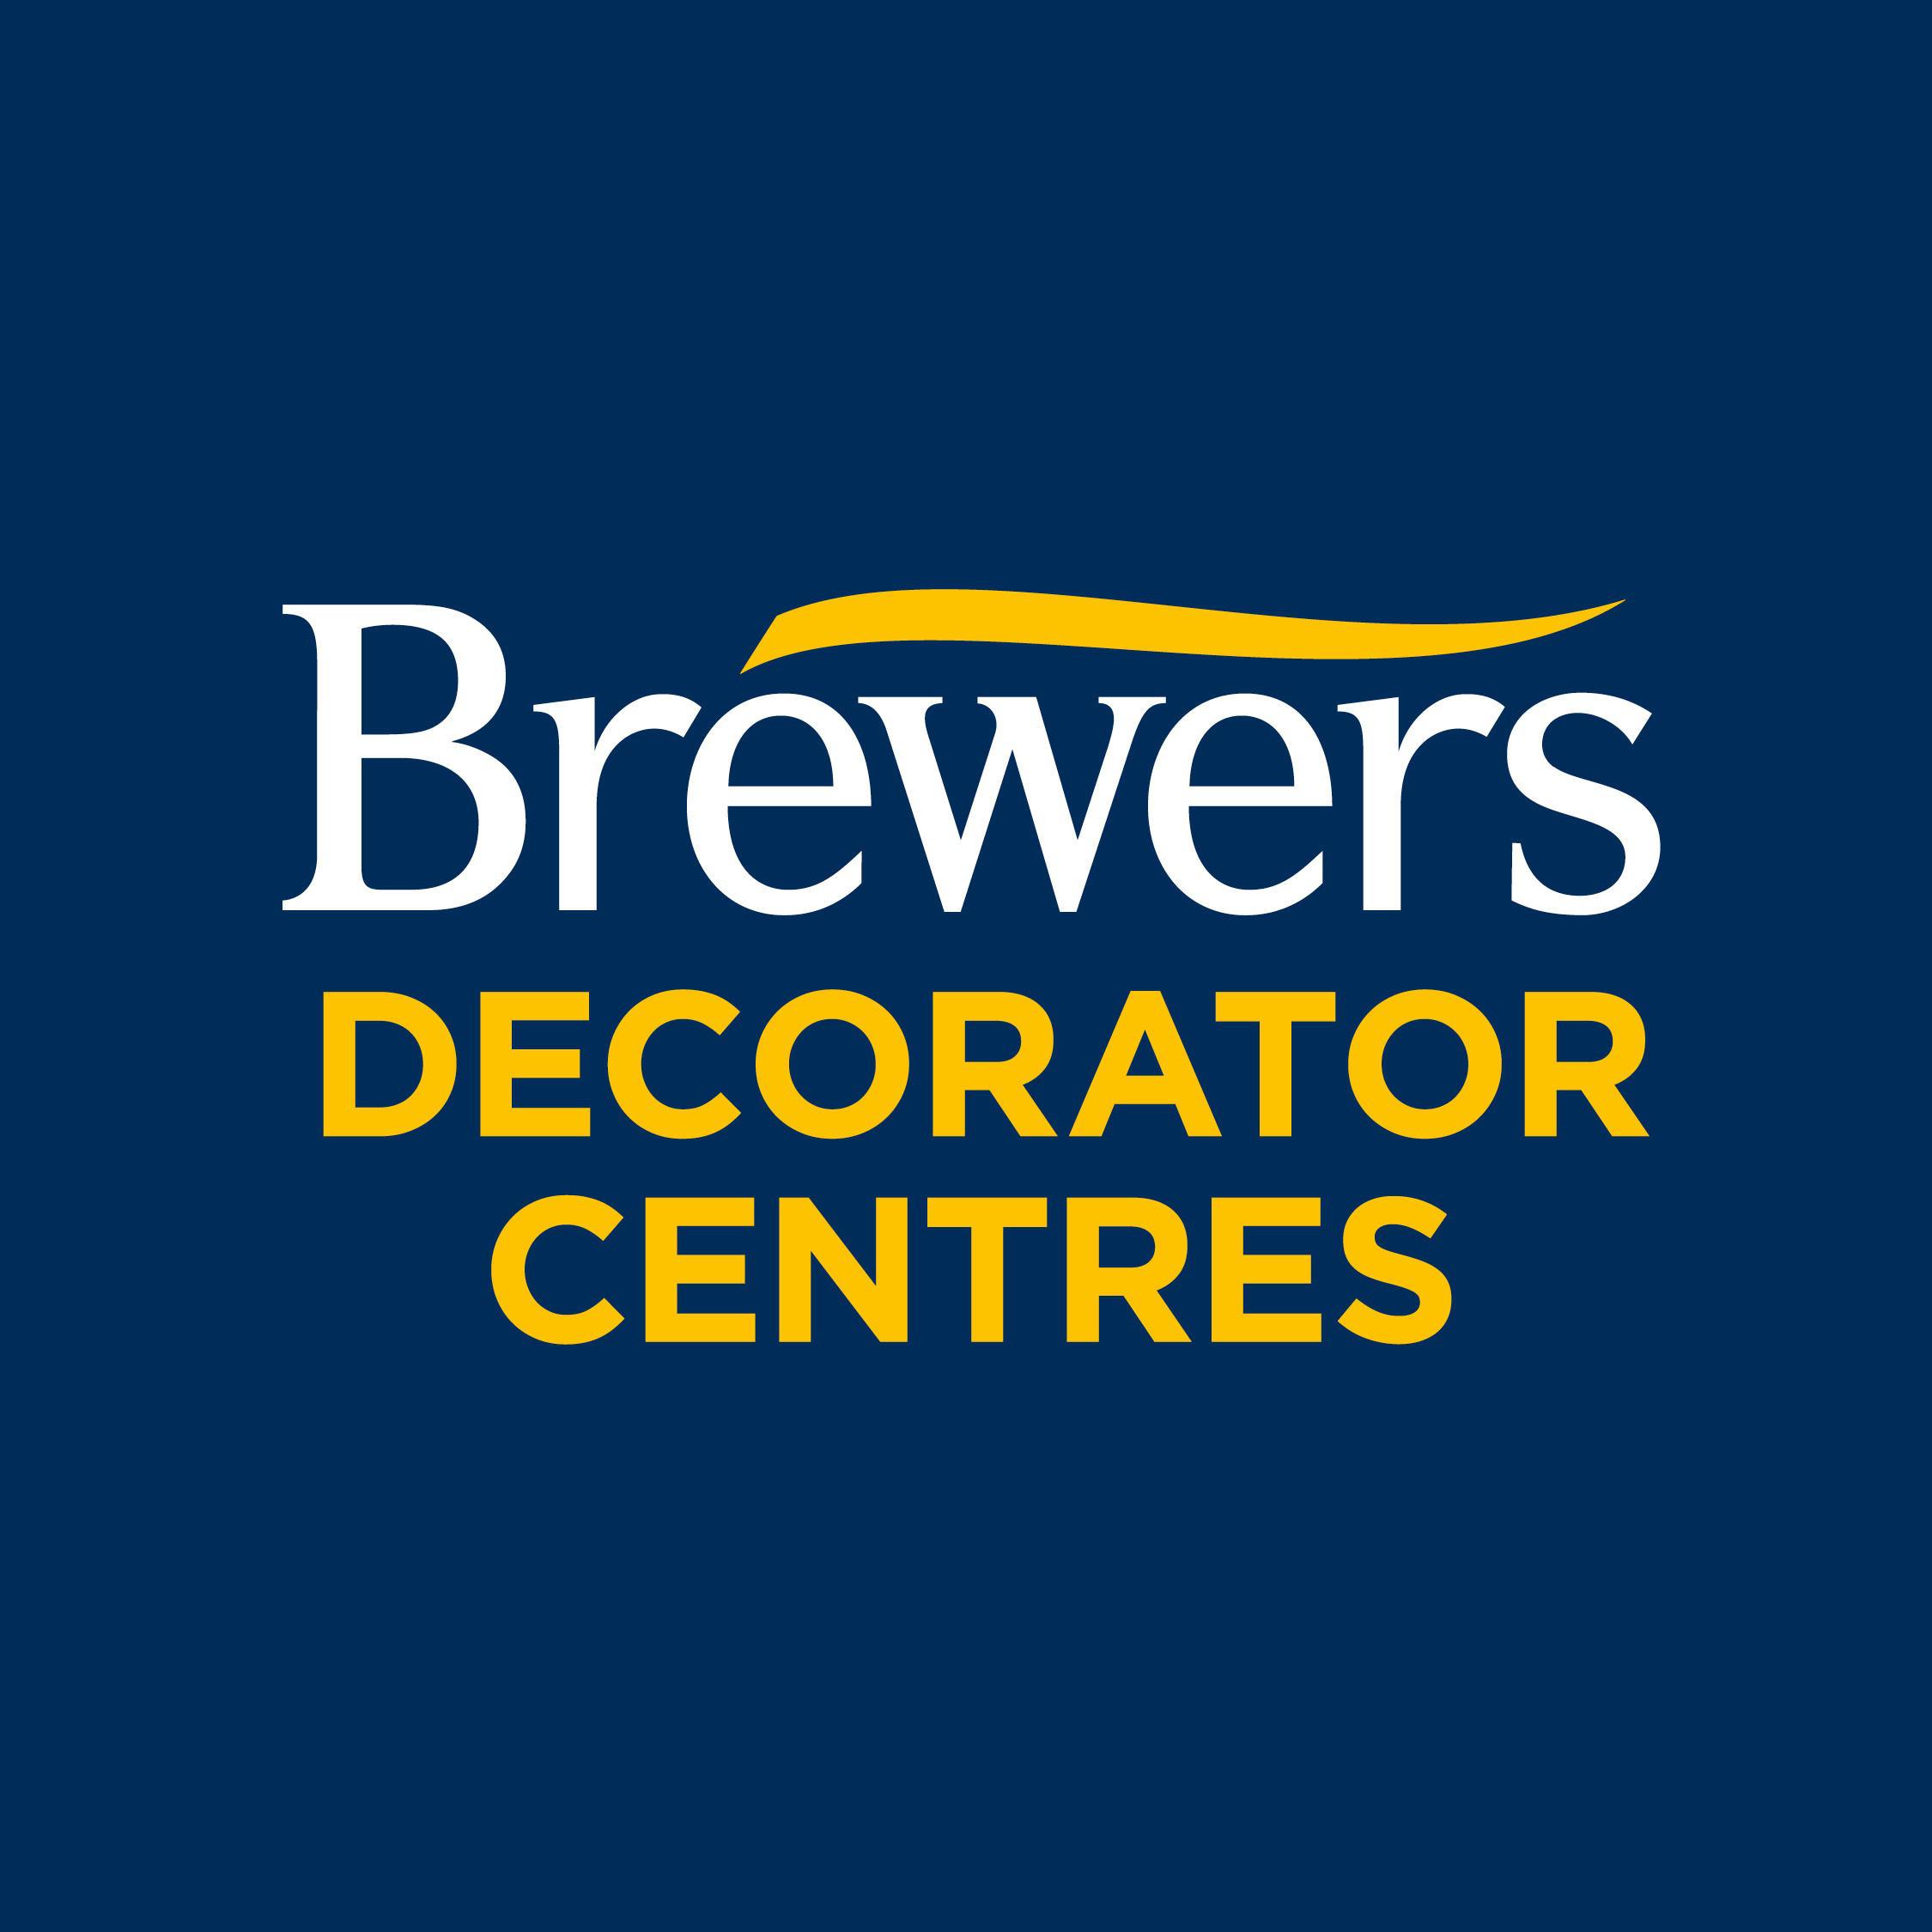 Brewers Decorator Centres - Stevenage, Hertfordshire SG1 3HH - 01438 317757 | ShowMeLocal.com